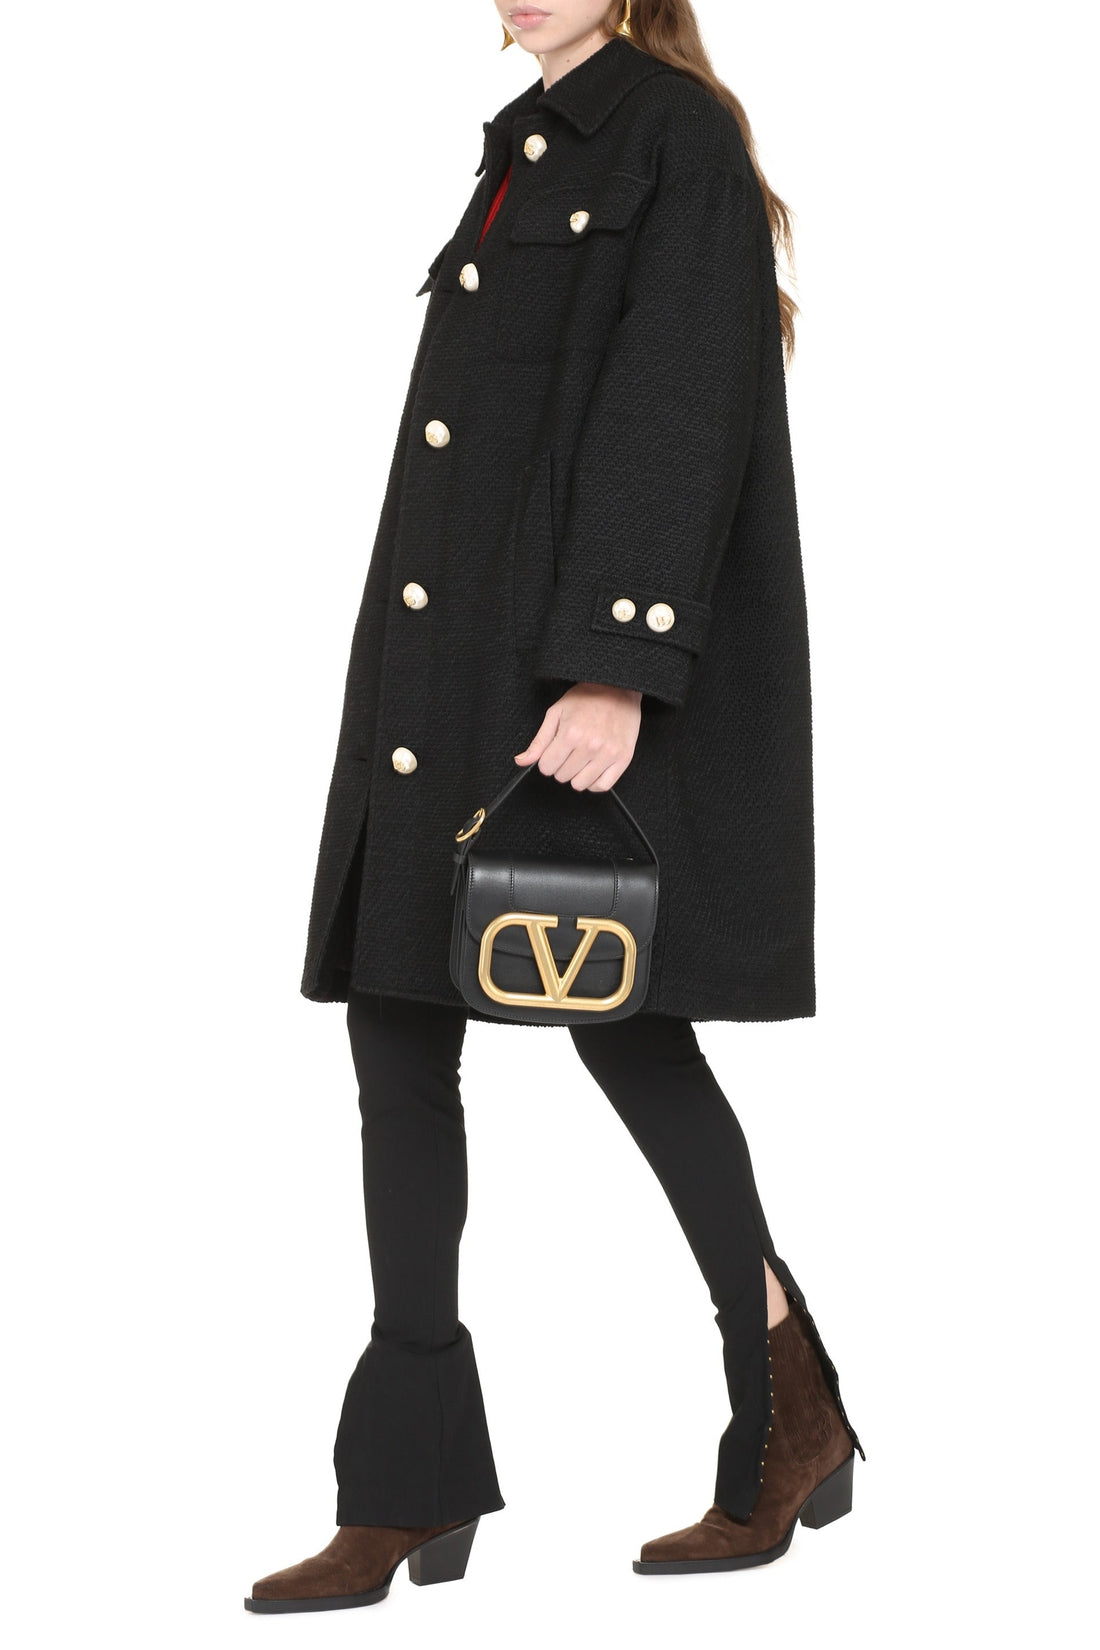 Dolce & Gabbana-OUTLET-SALE-Alpaca blend coat-ARCHIVIST